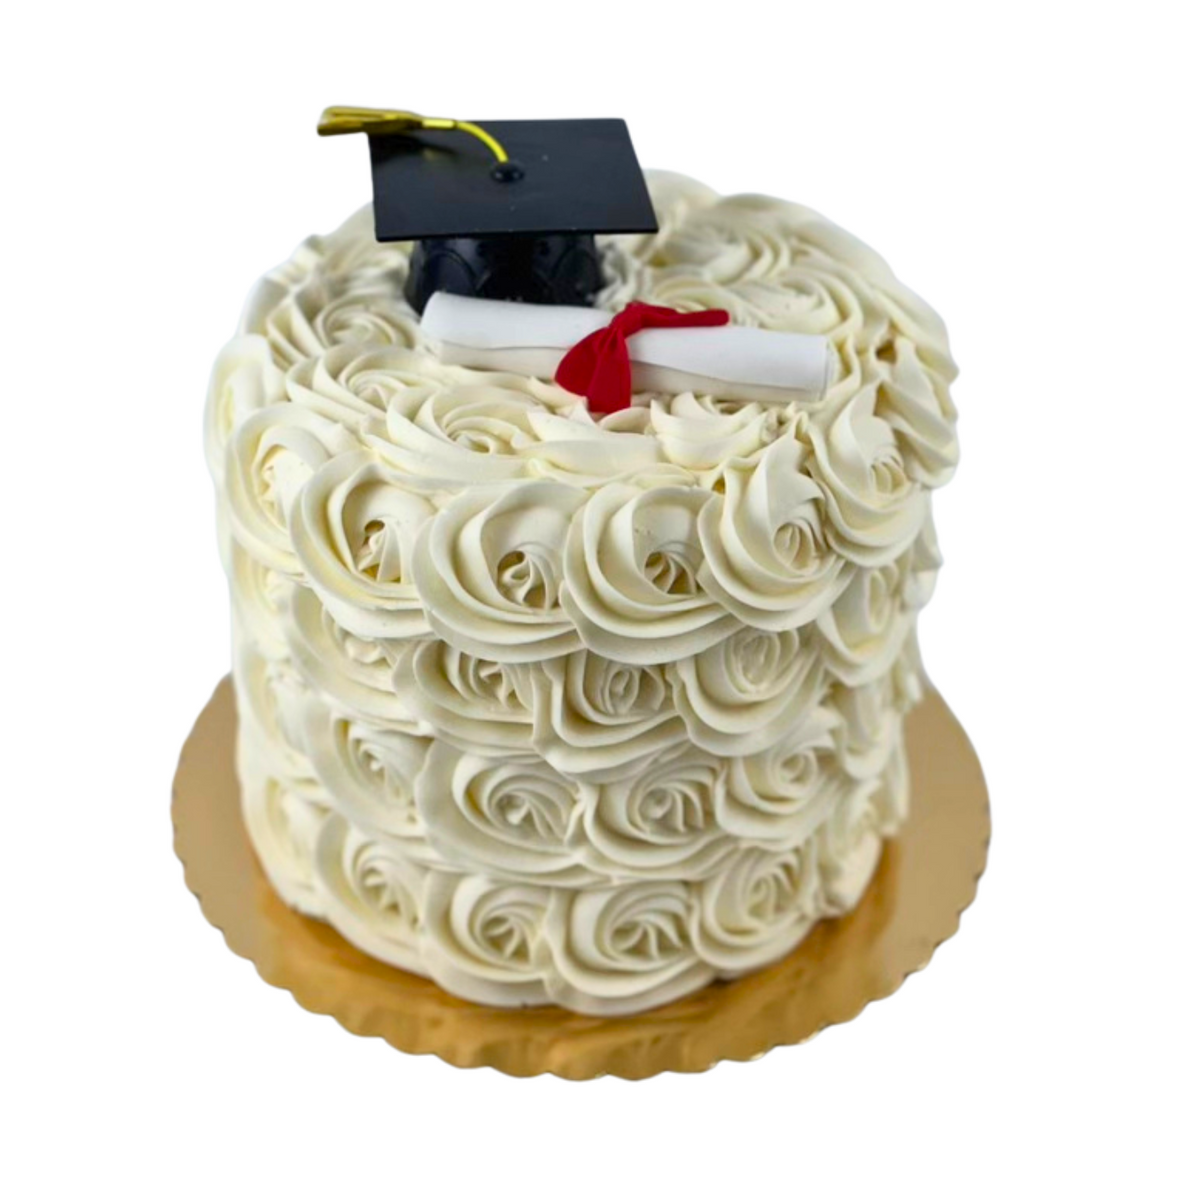 Rosette Graduation Cake